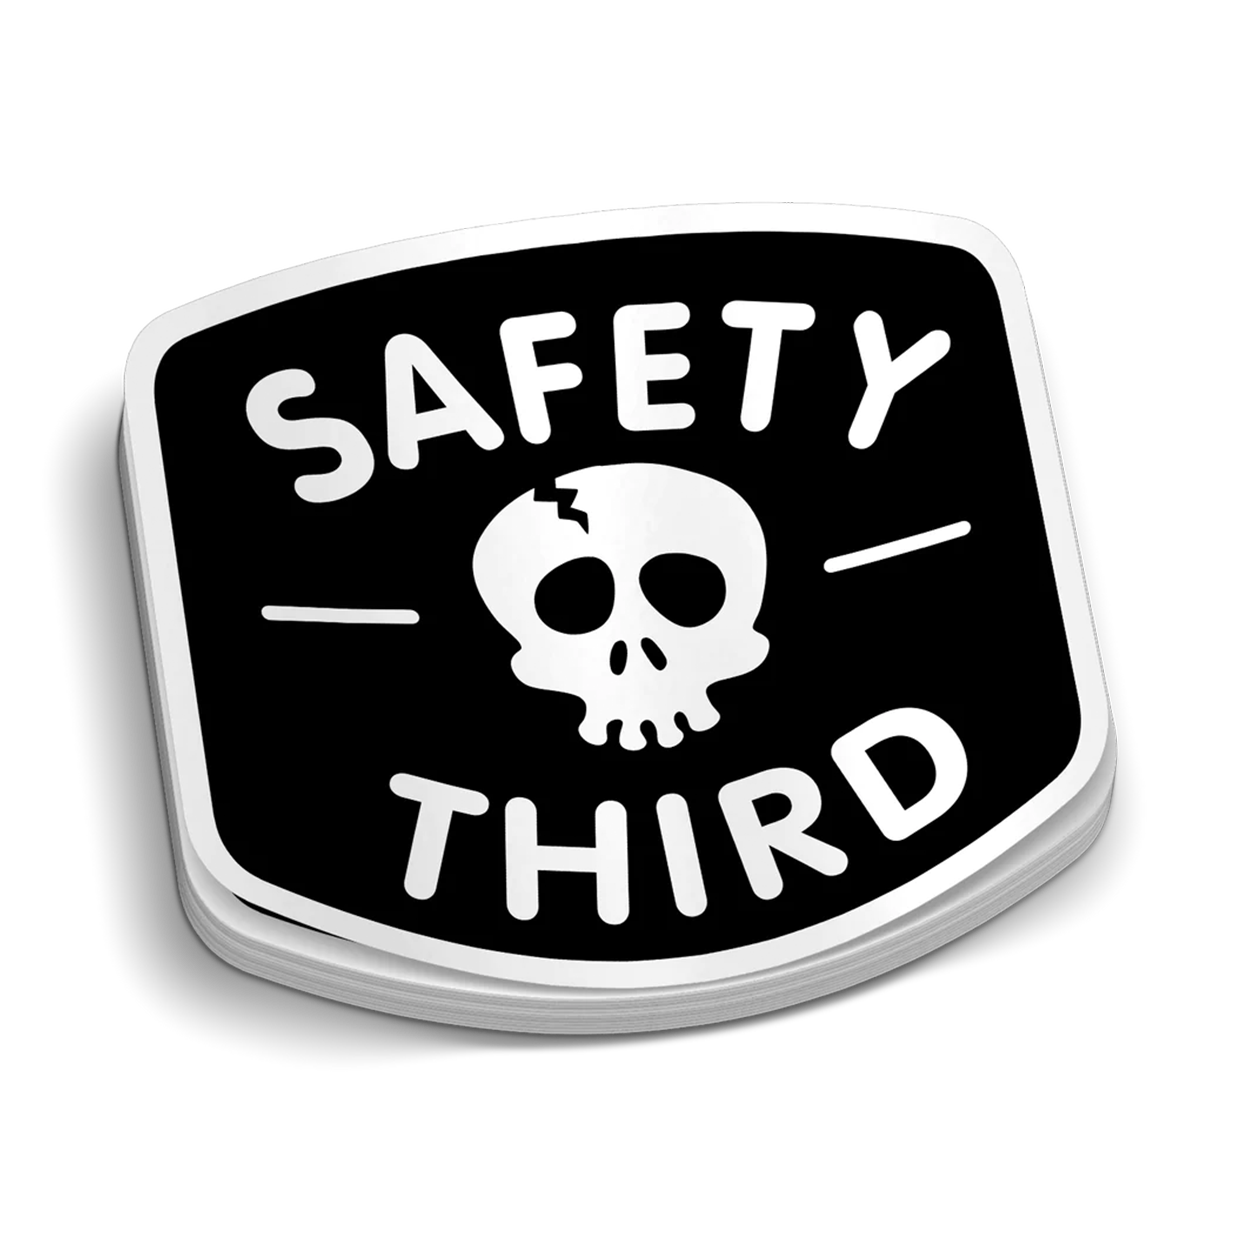 Safety Third - Hard Hat Sticker